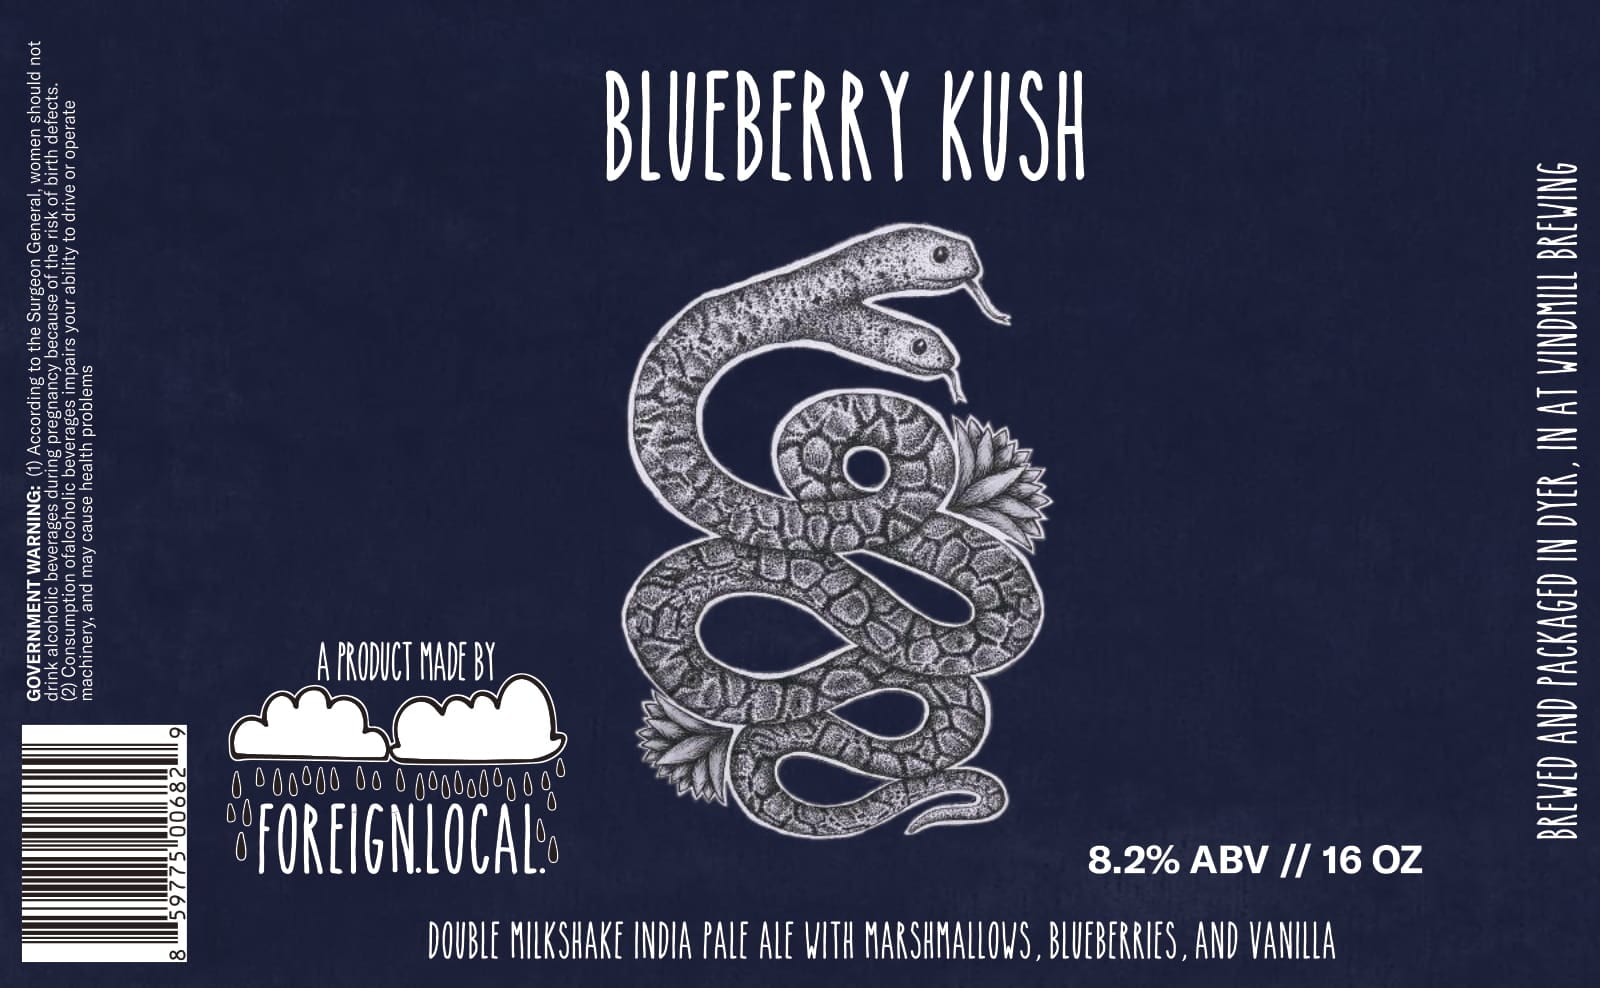 blueberry kush label